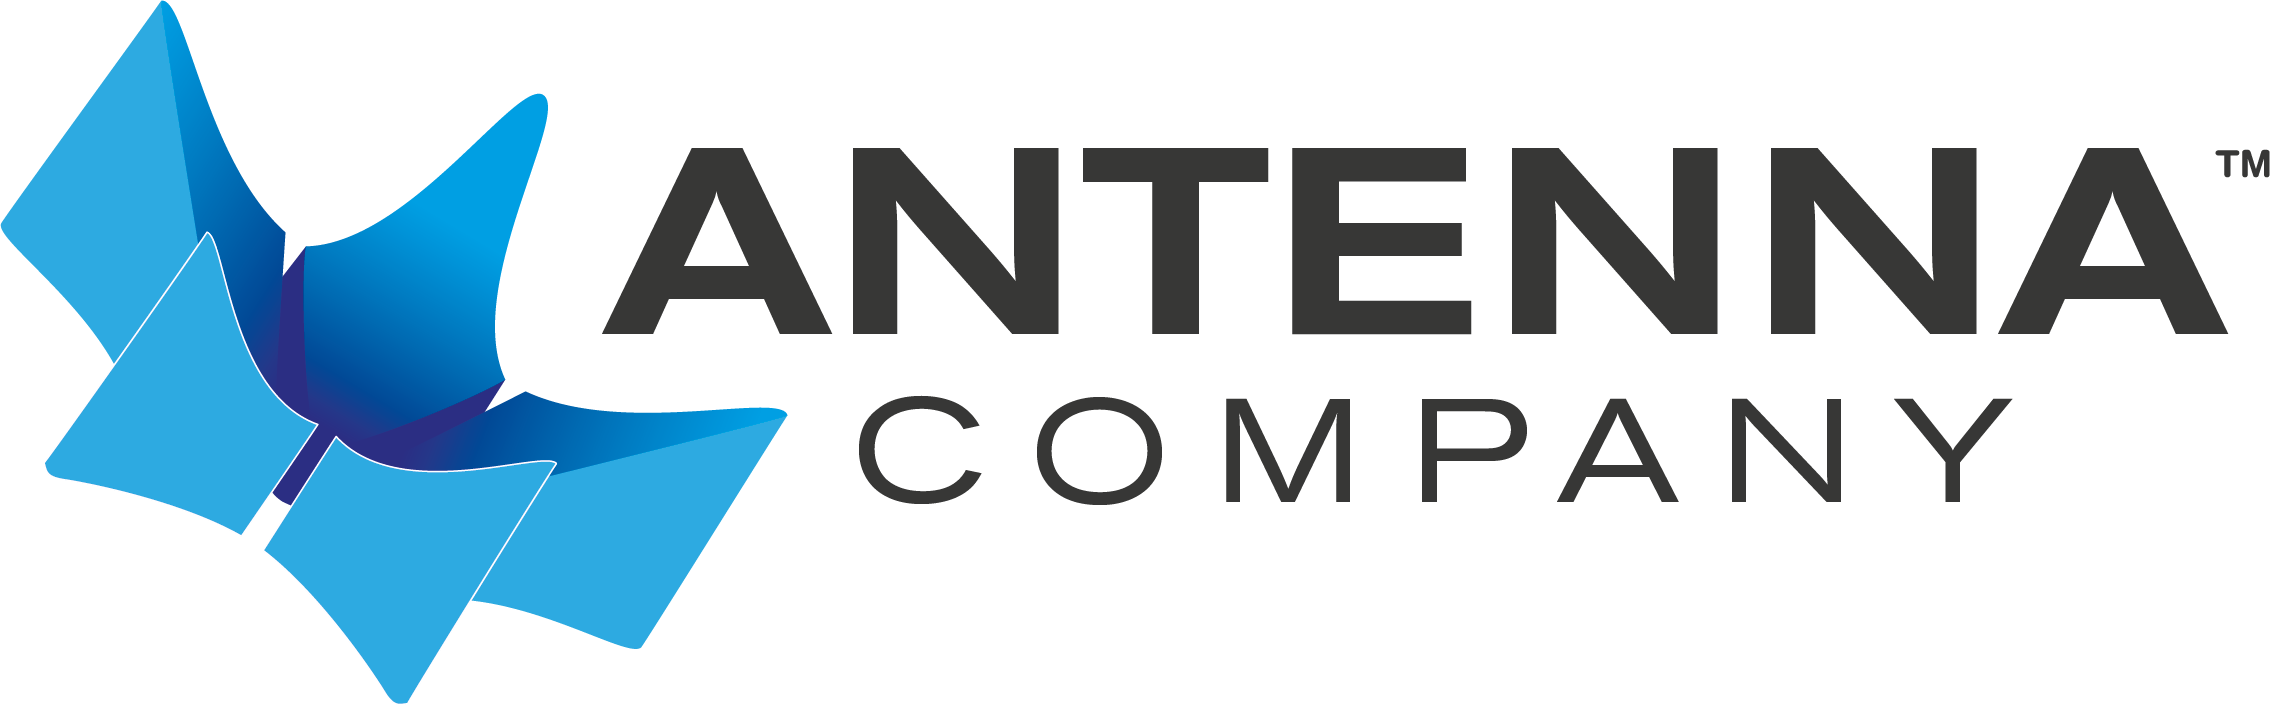 Antenna Company